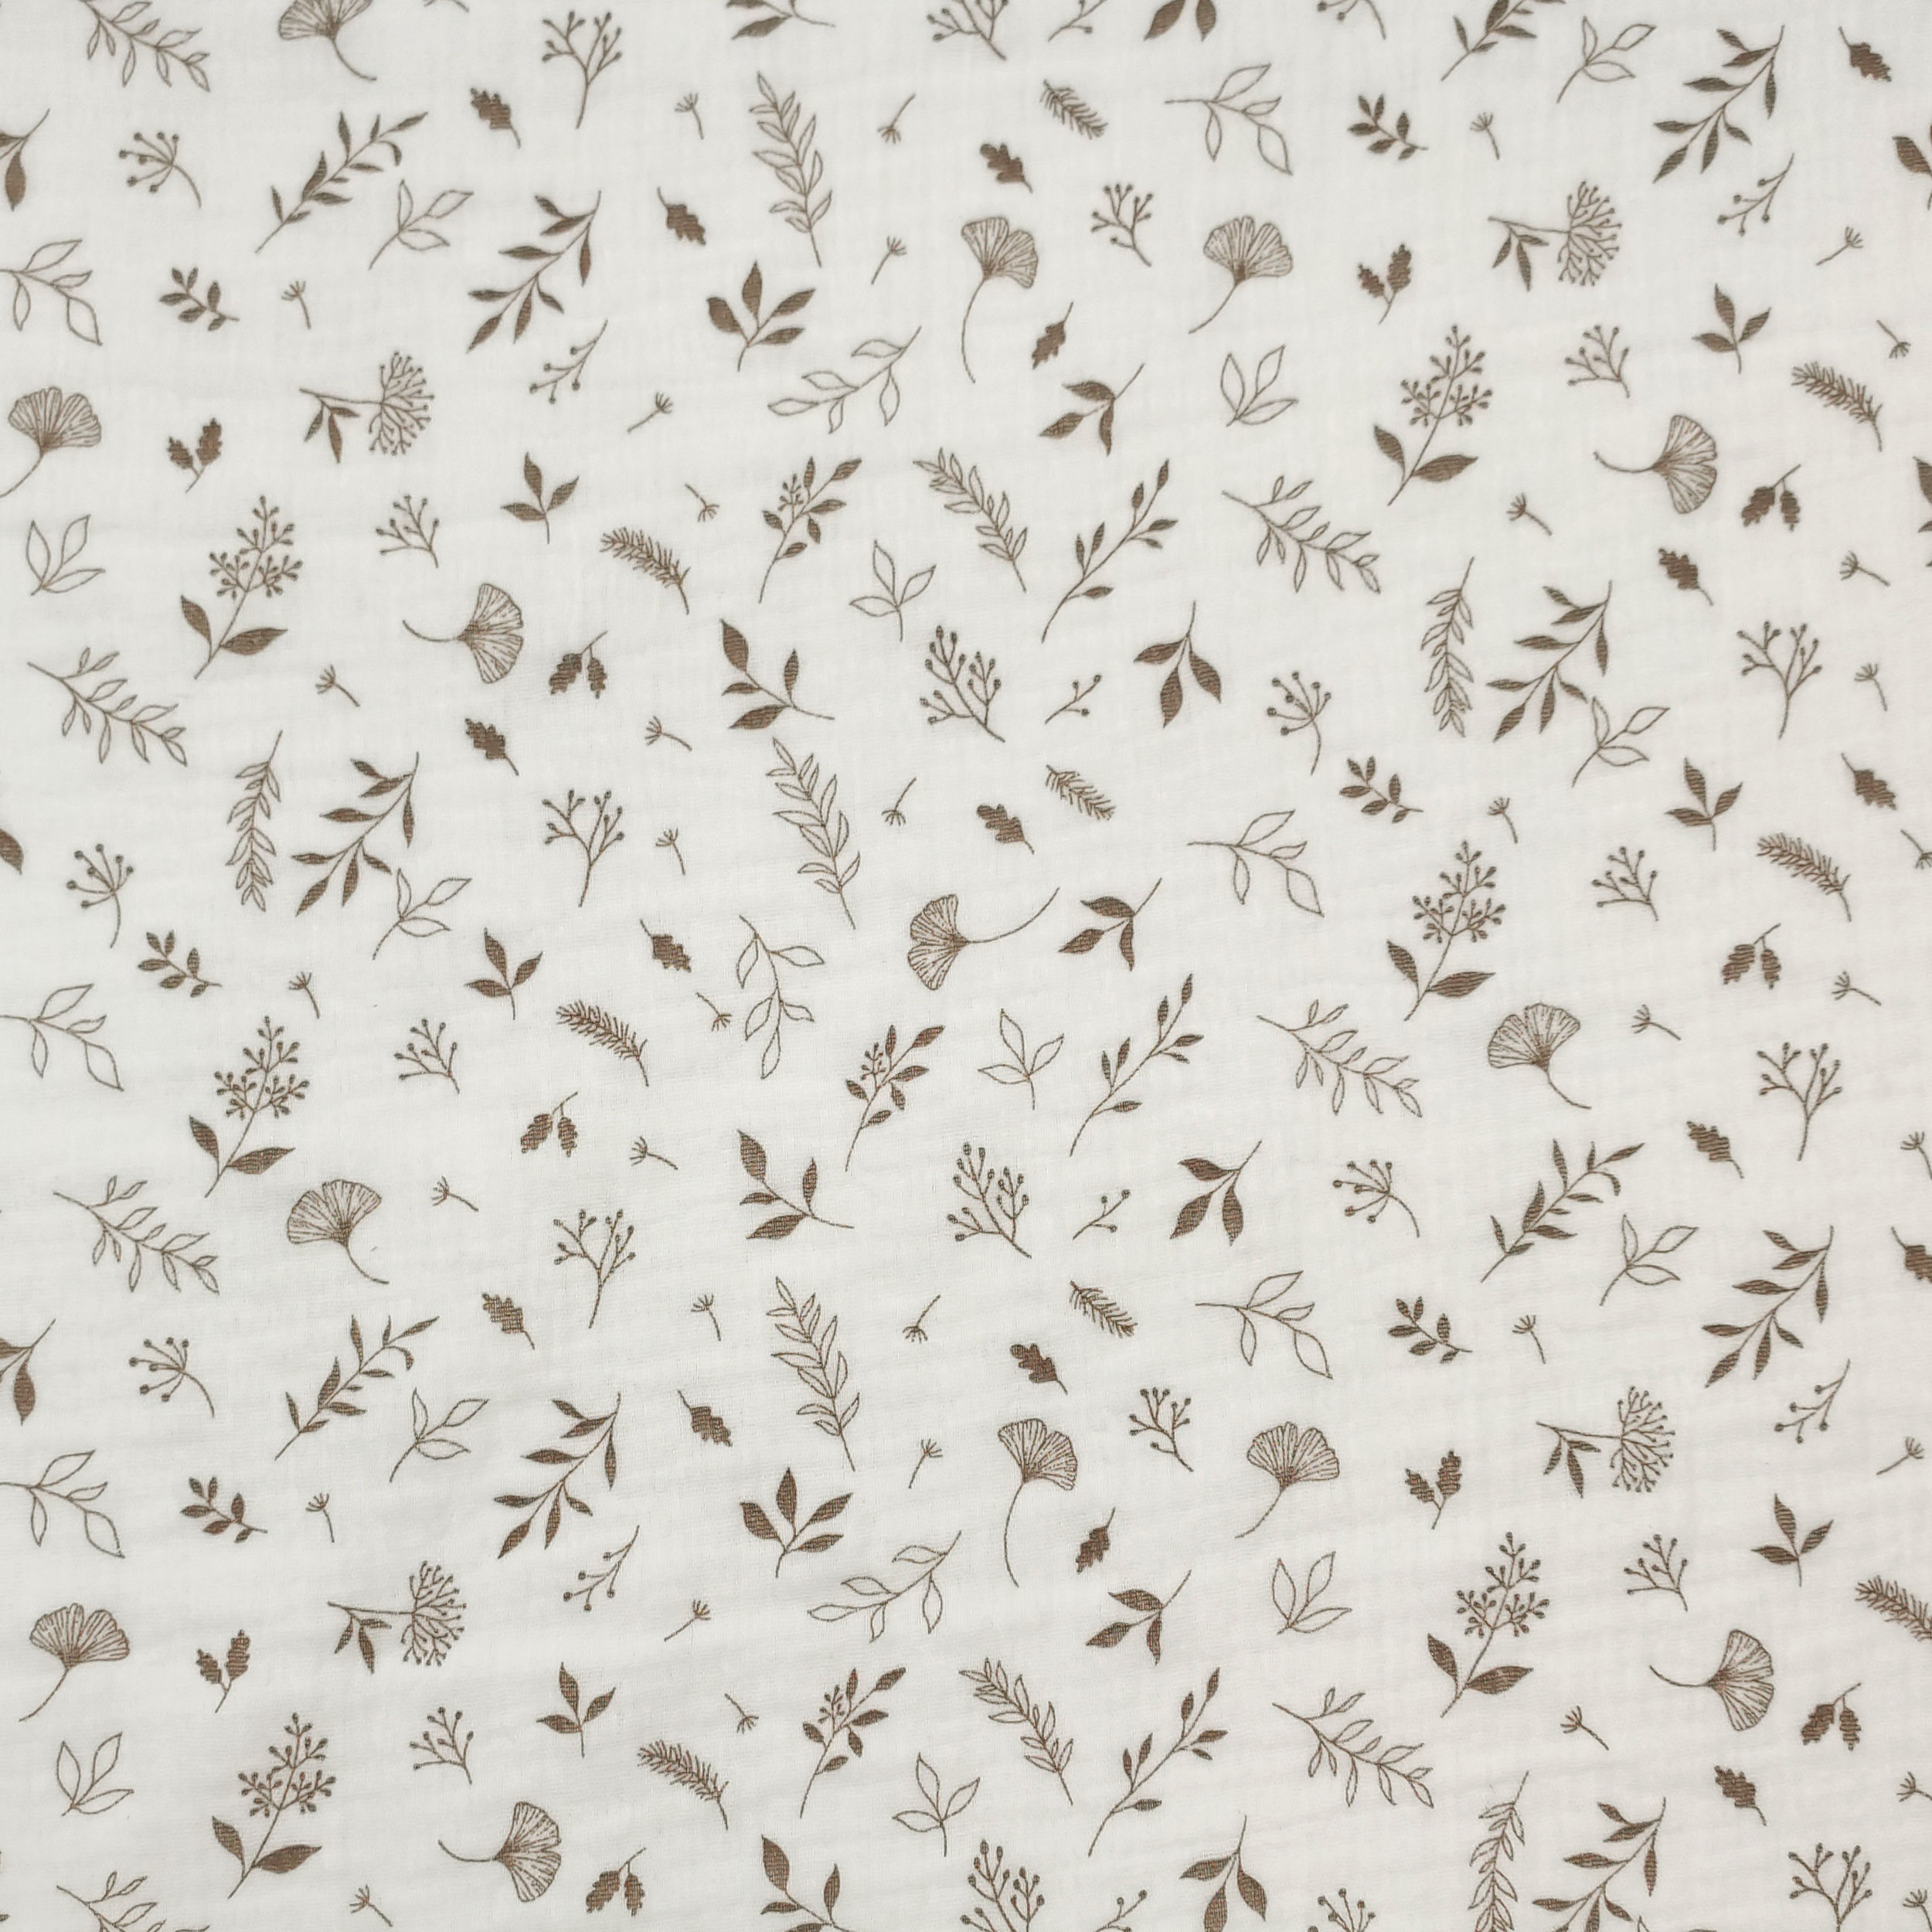 Ritaglio Mussola di Cotone Foglioline Sfondo Bianco 50x130 cm